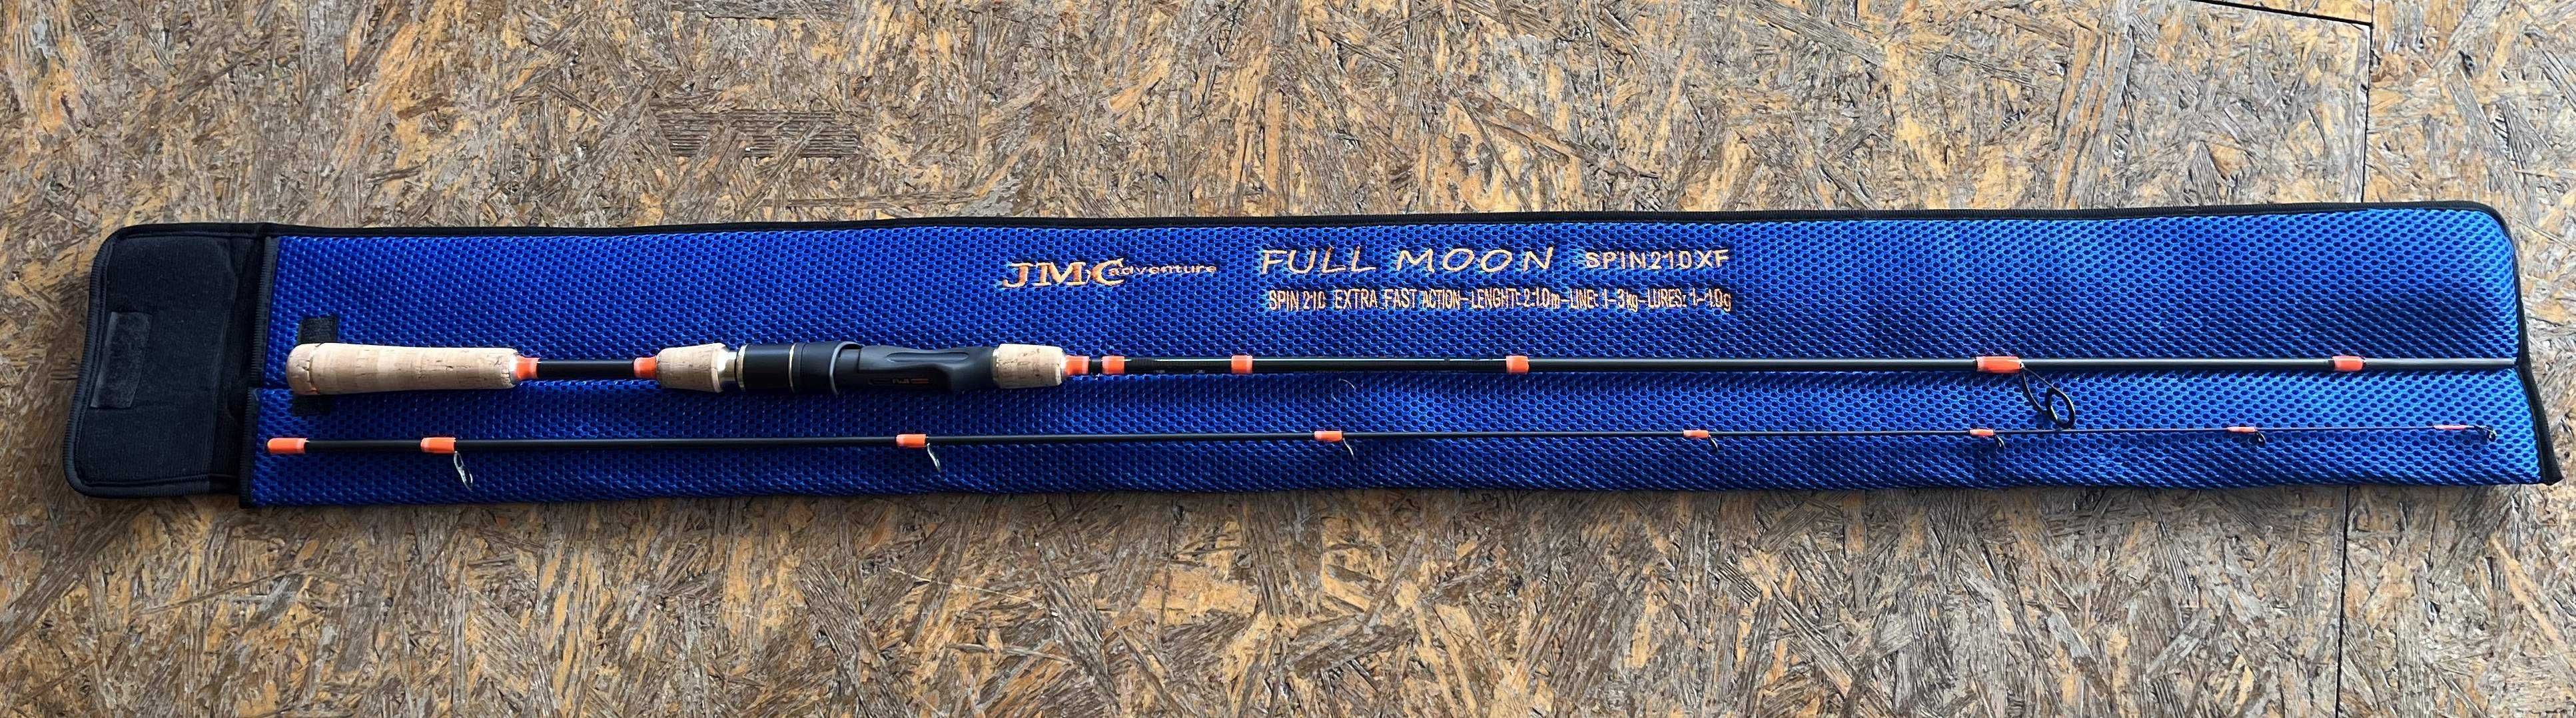 Wędka JMC FULL MOON 210CM, 1-10G WSJMC210/1-10XF